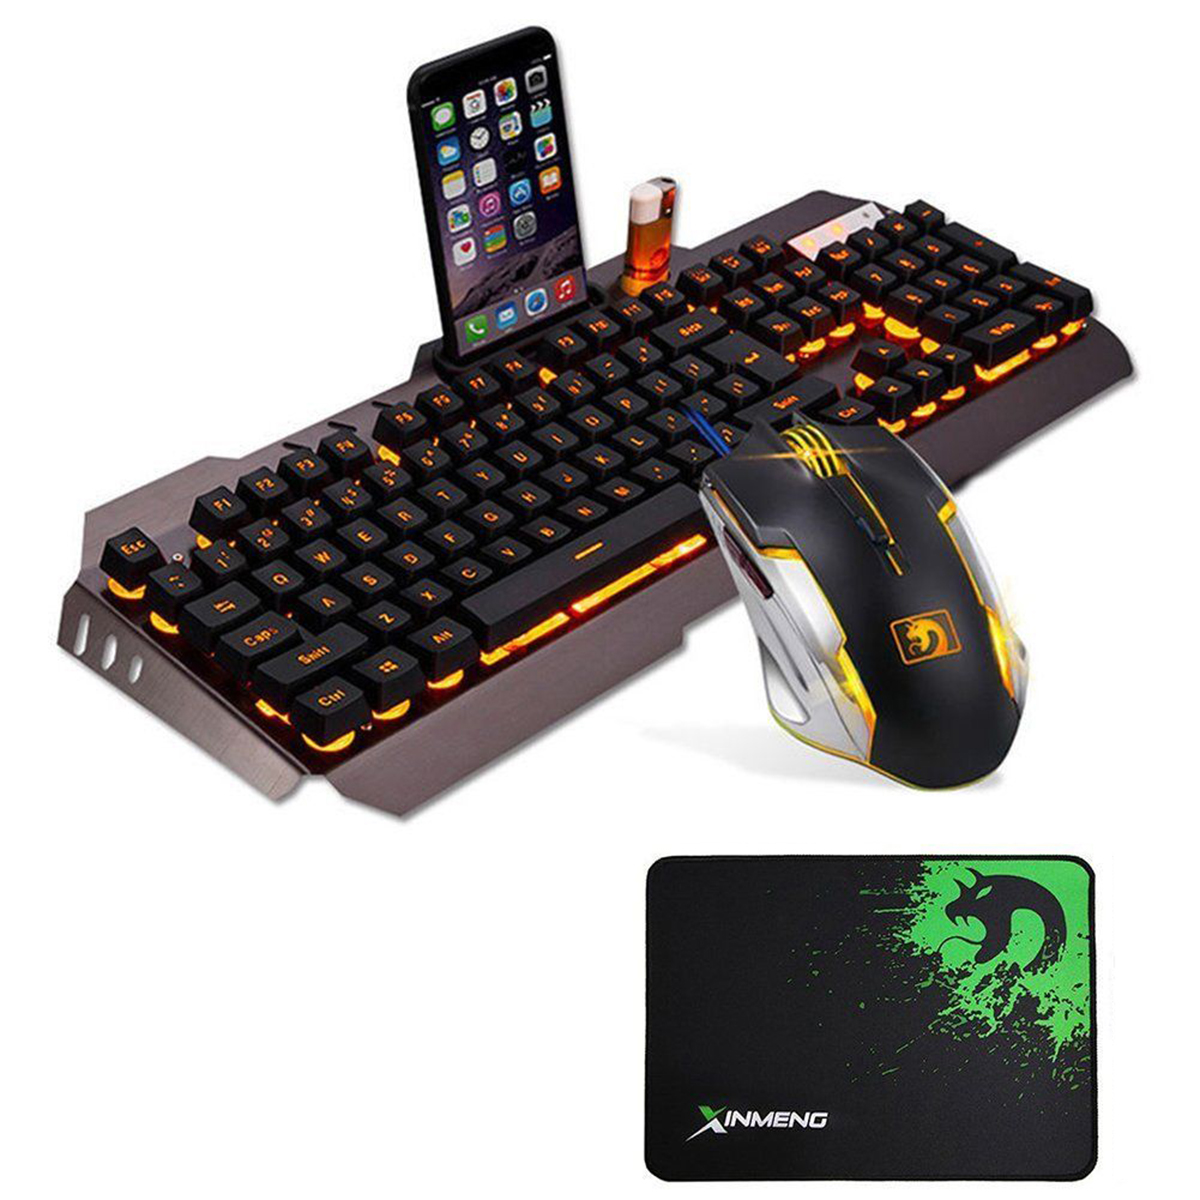 

USB Проводной Желтый LED Подсветка Механический Handfeel Gaming Клавиатура и Мышь Combo